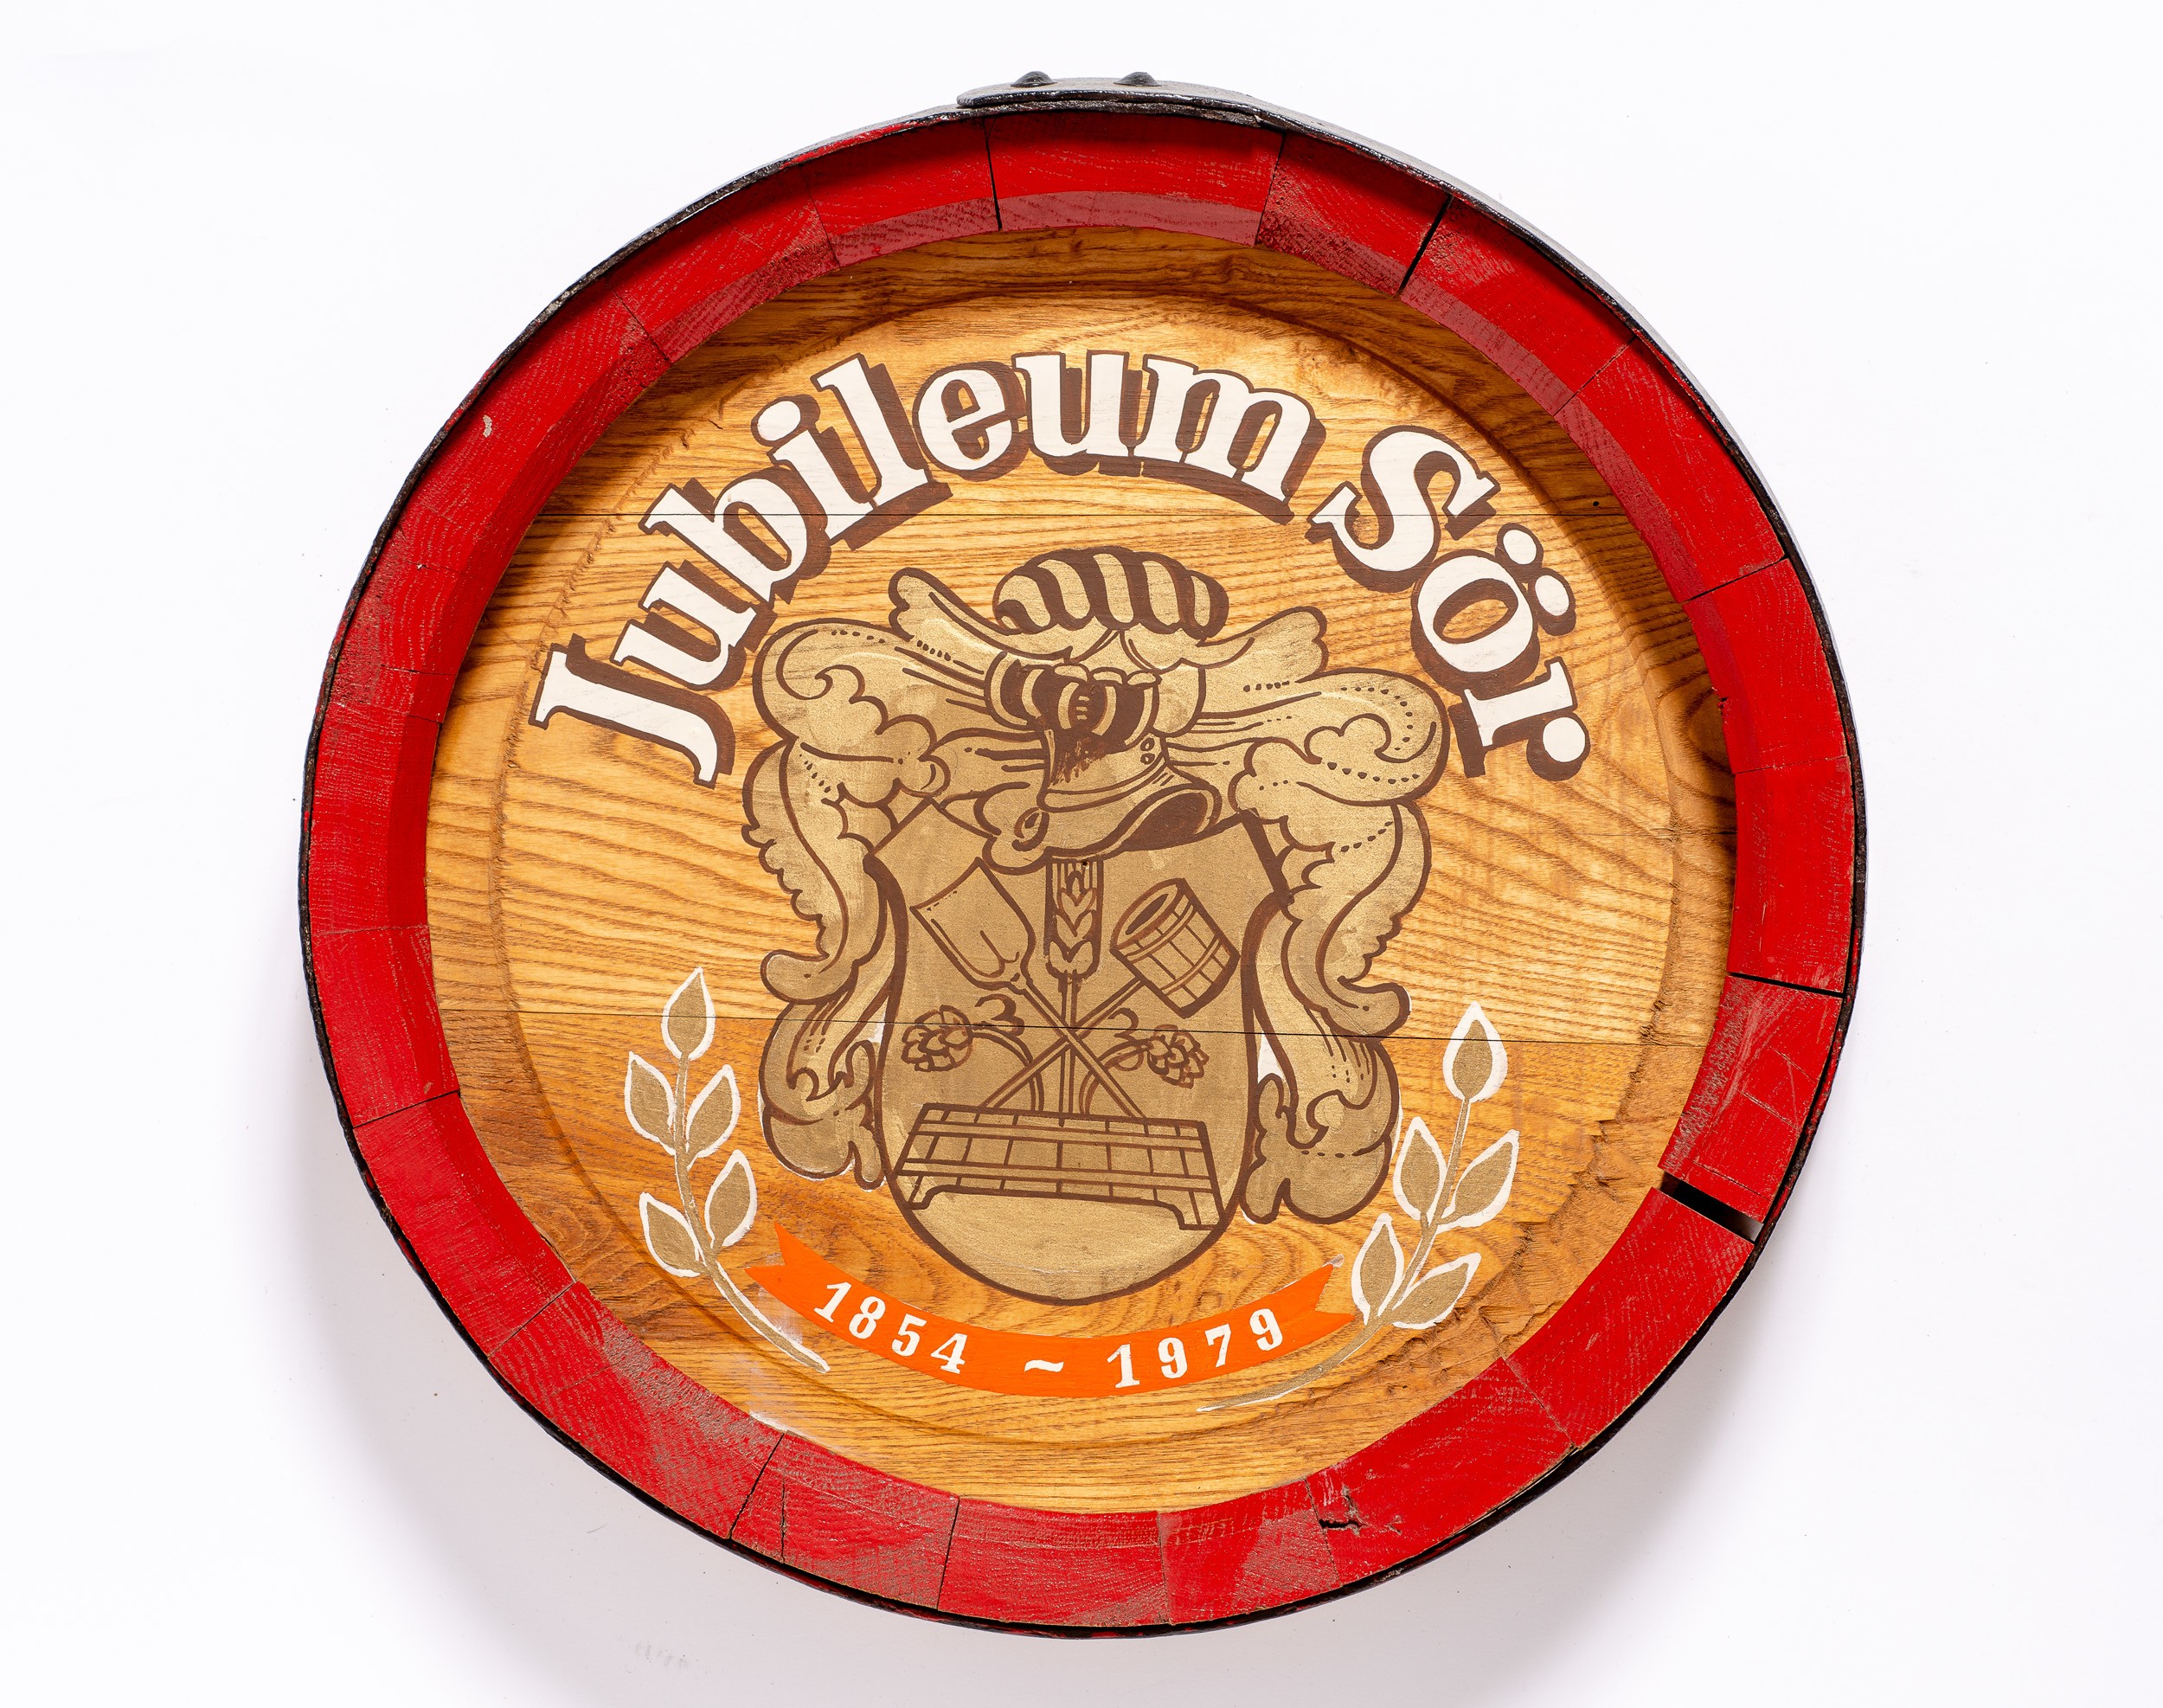 Fahordóvég:jubileum sör 1854-1979 (Söripari Emléktár - Dreher Sörmúzeum CC BY-NC-SA)